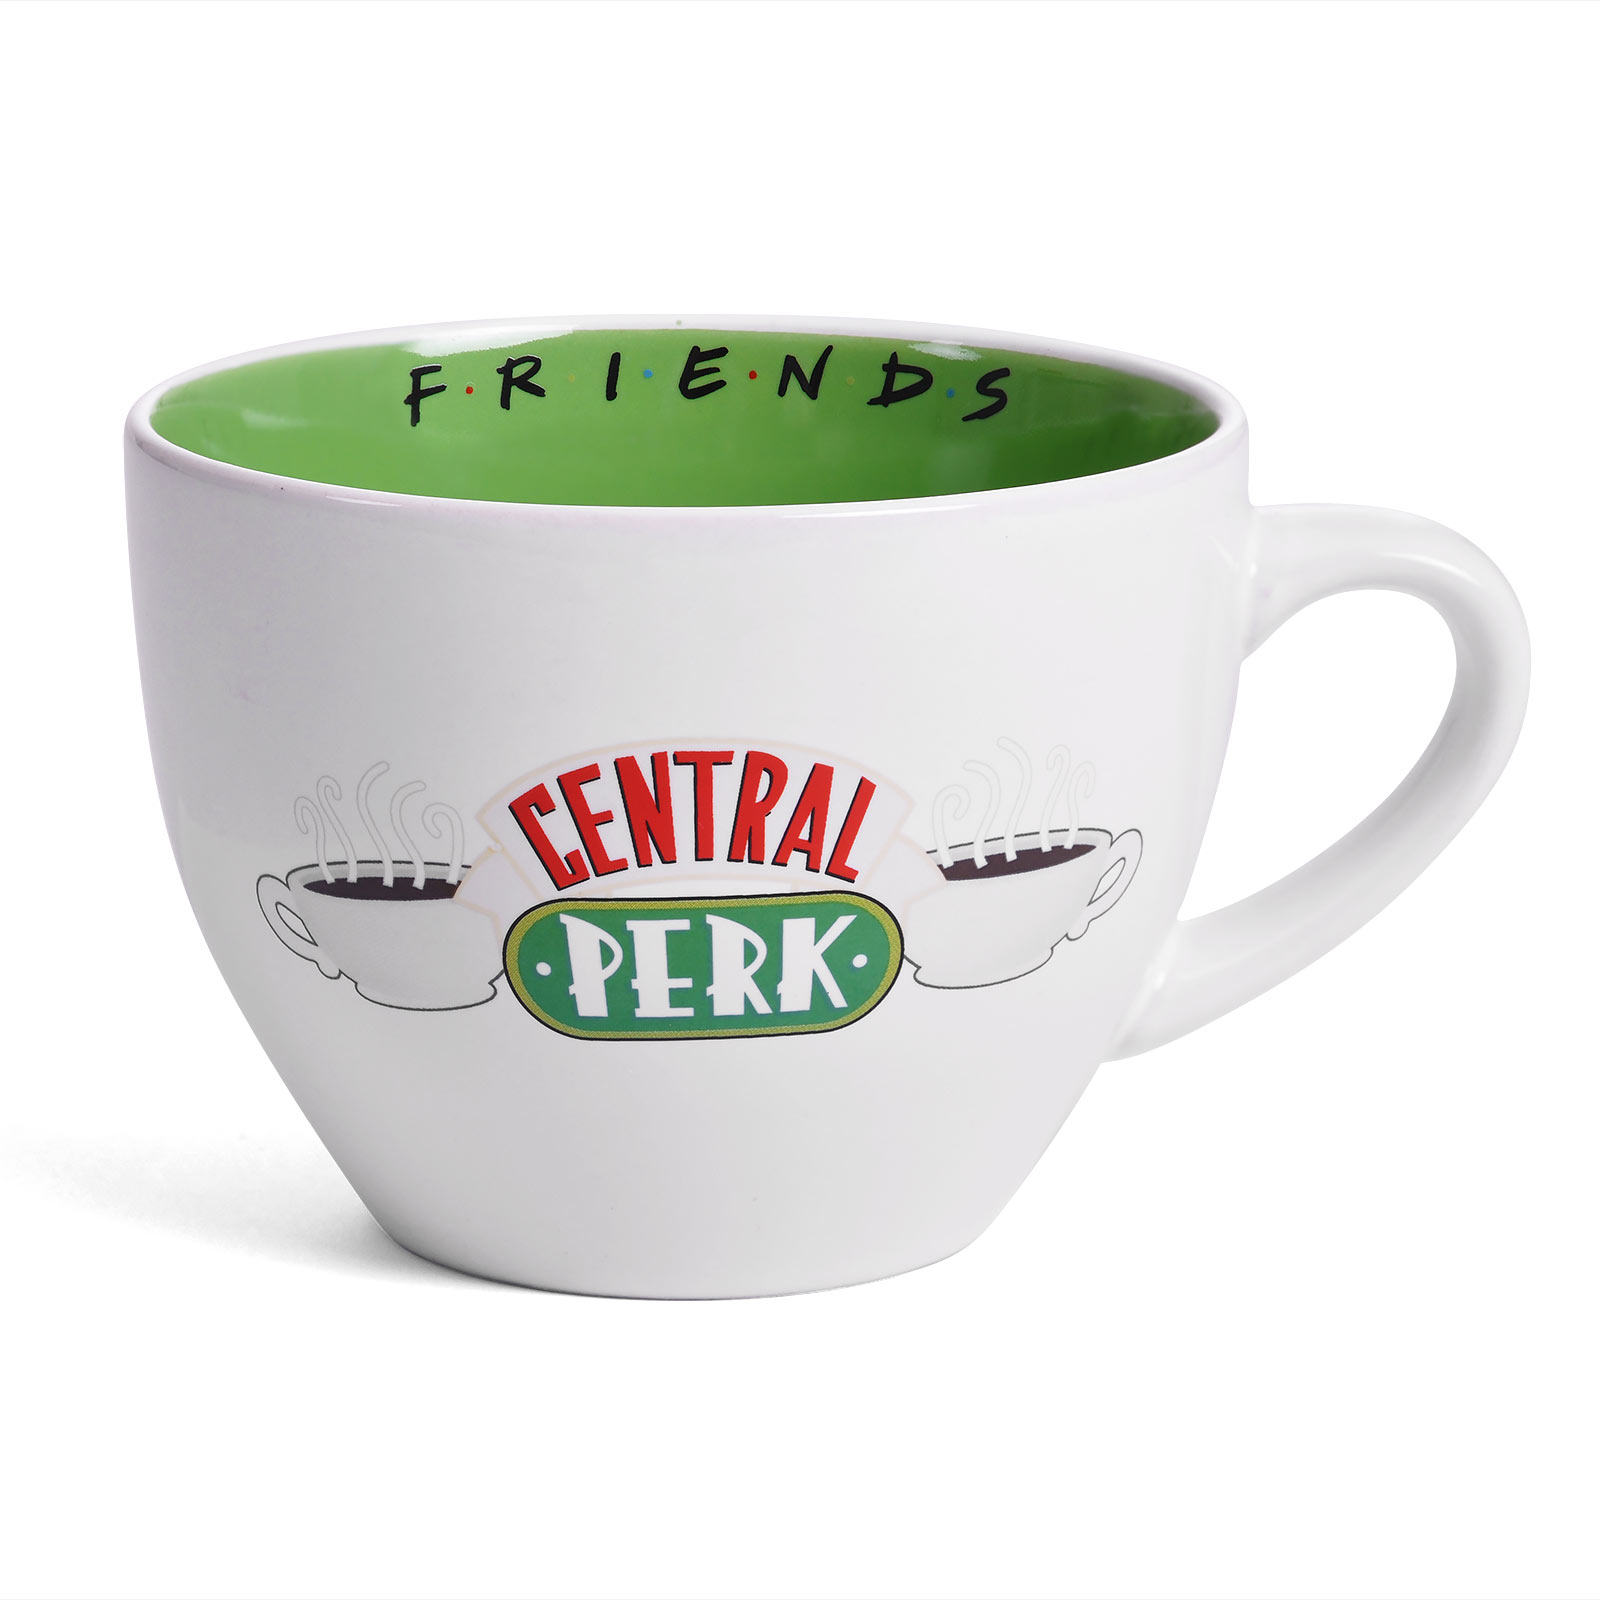 Friends - Central Perk Tasse XXL